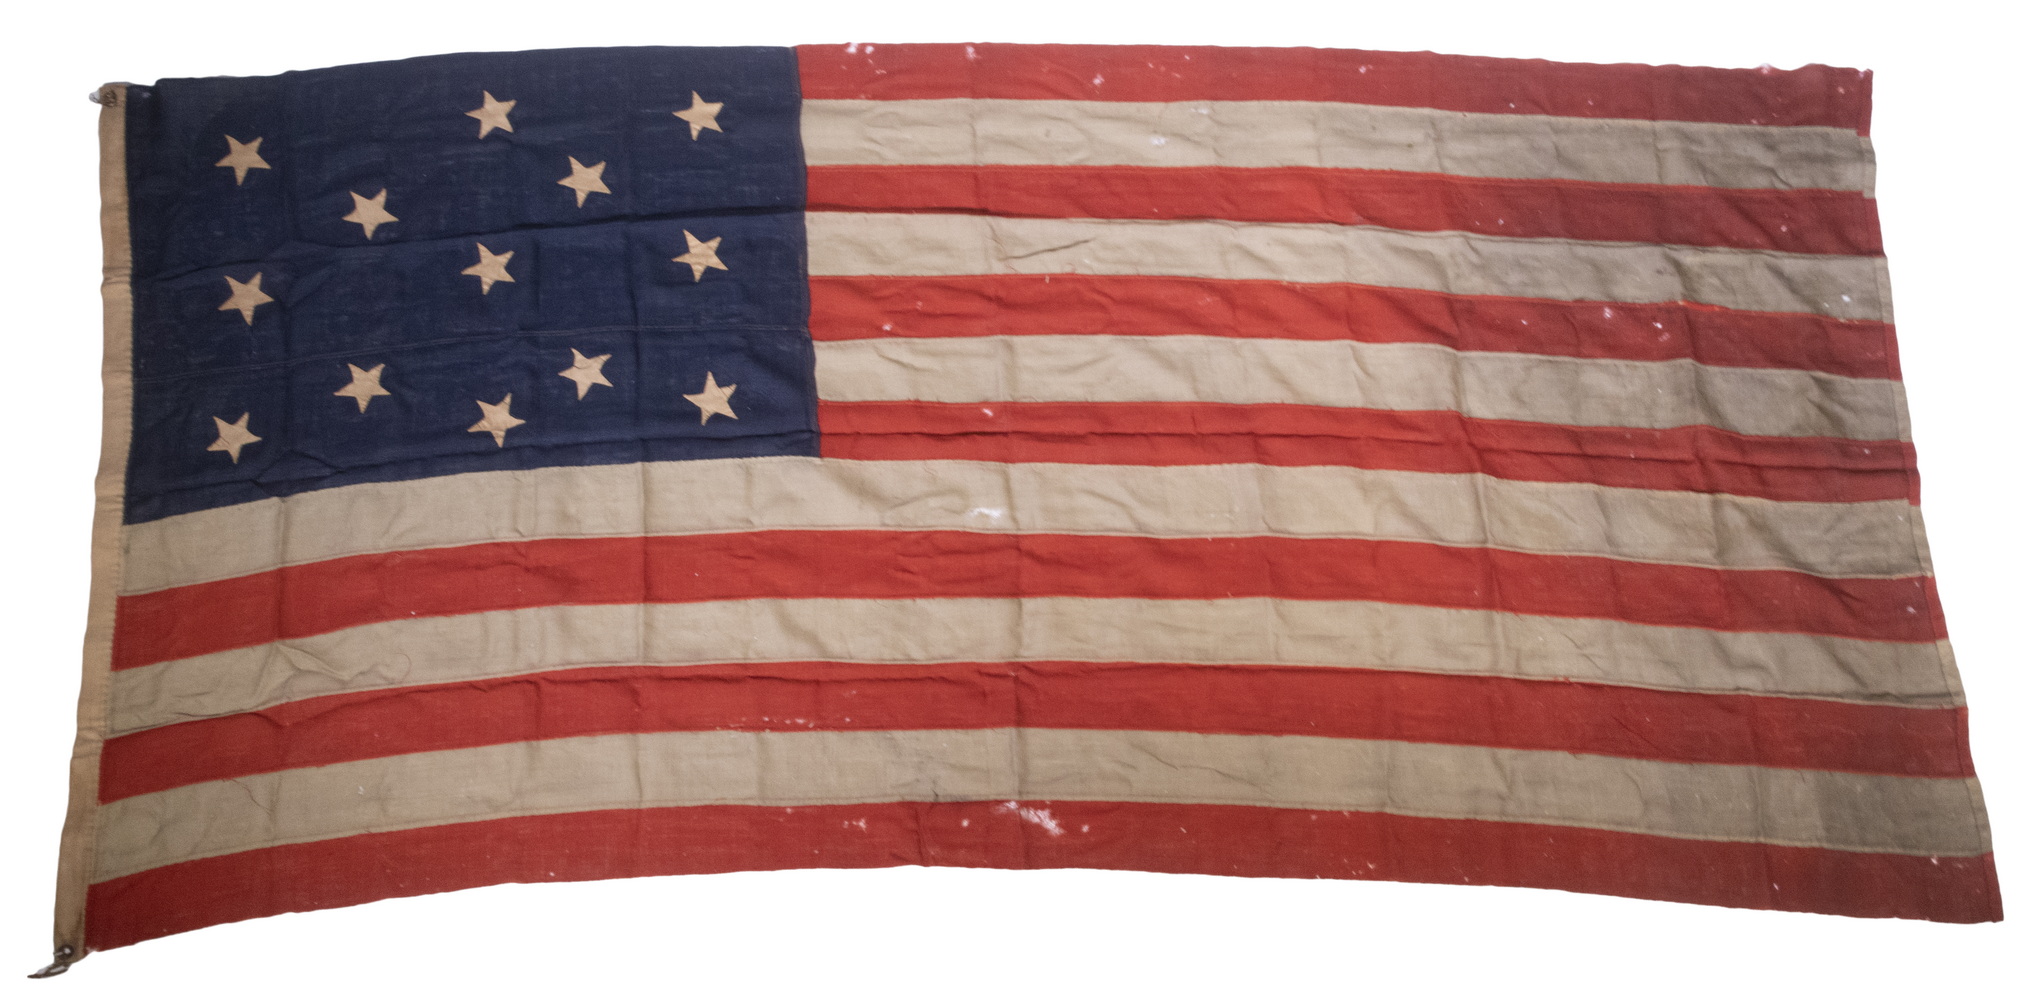 CENTENNIAL 13 STAR AMERICAN FLAG 2b1da0